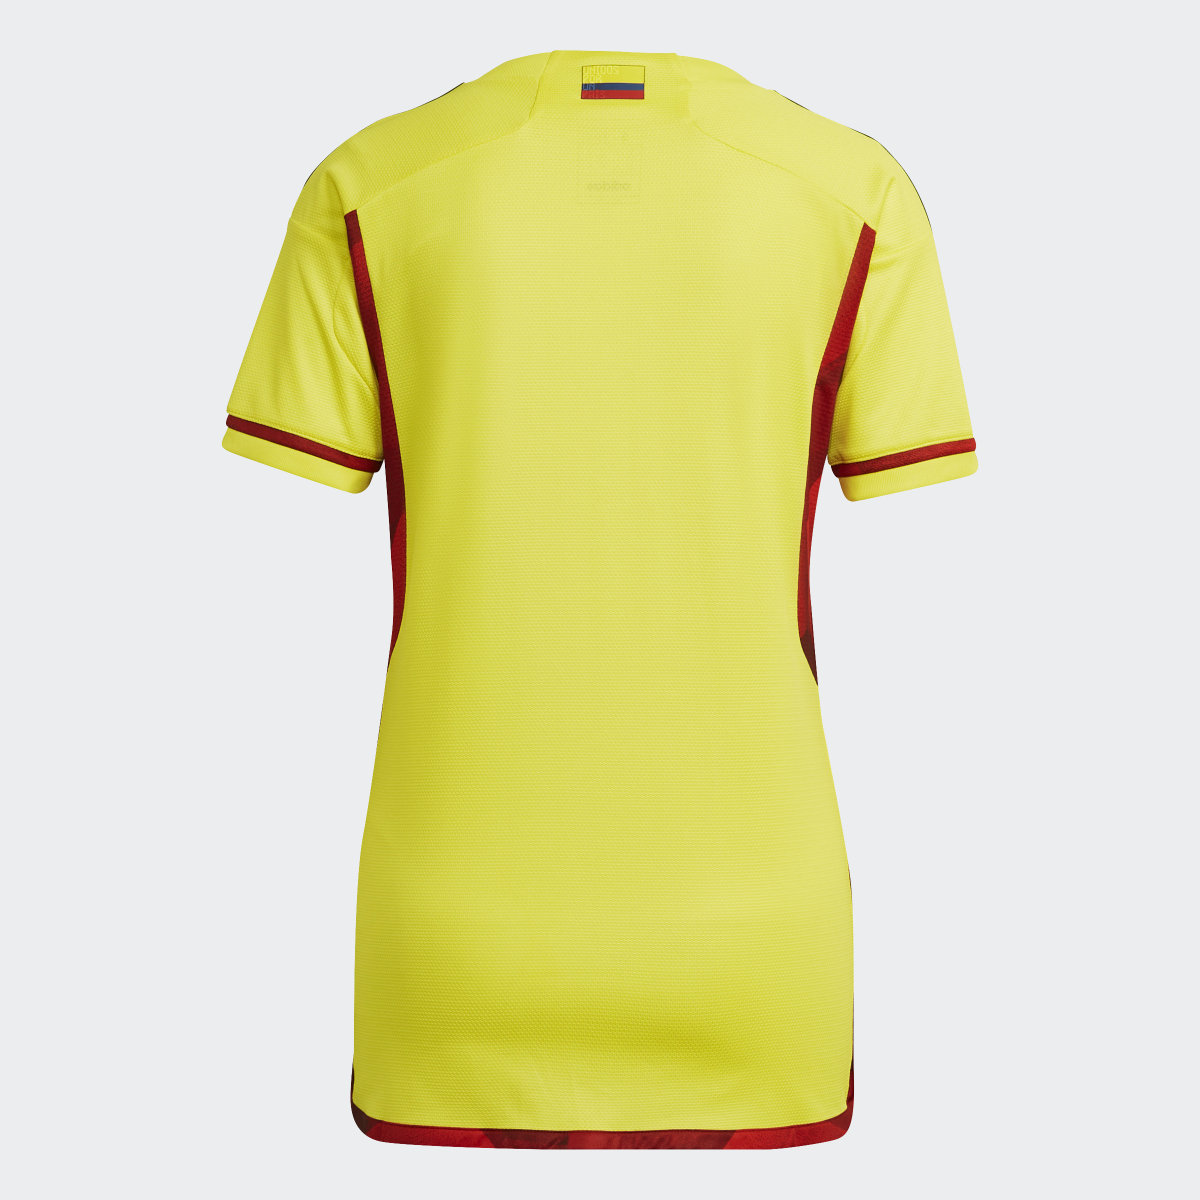 Adidas Jersey Uniforme de Local Selección Colombia 22. 6